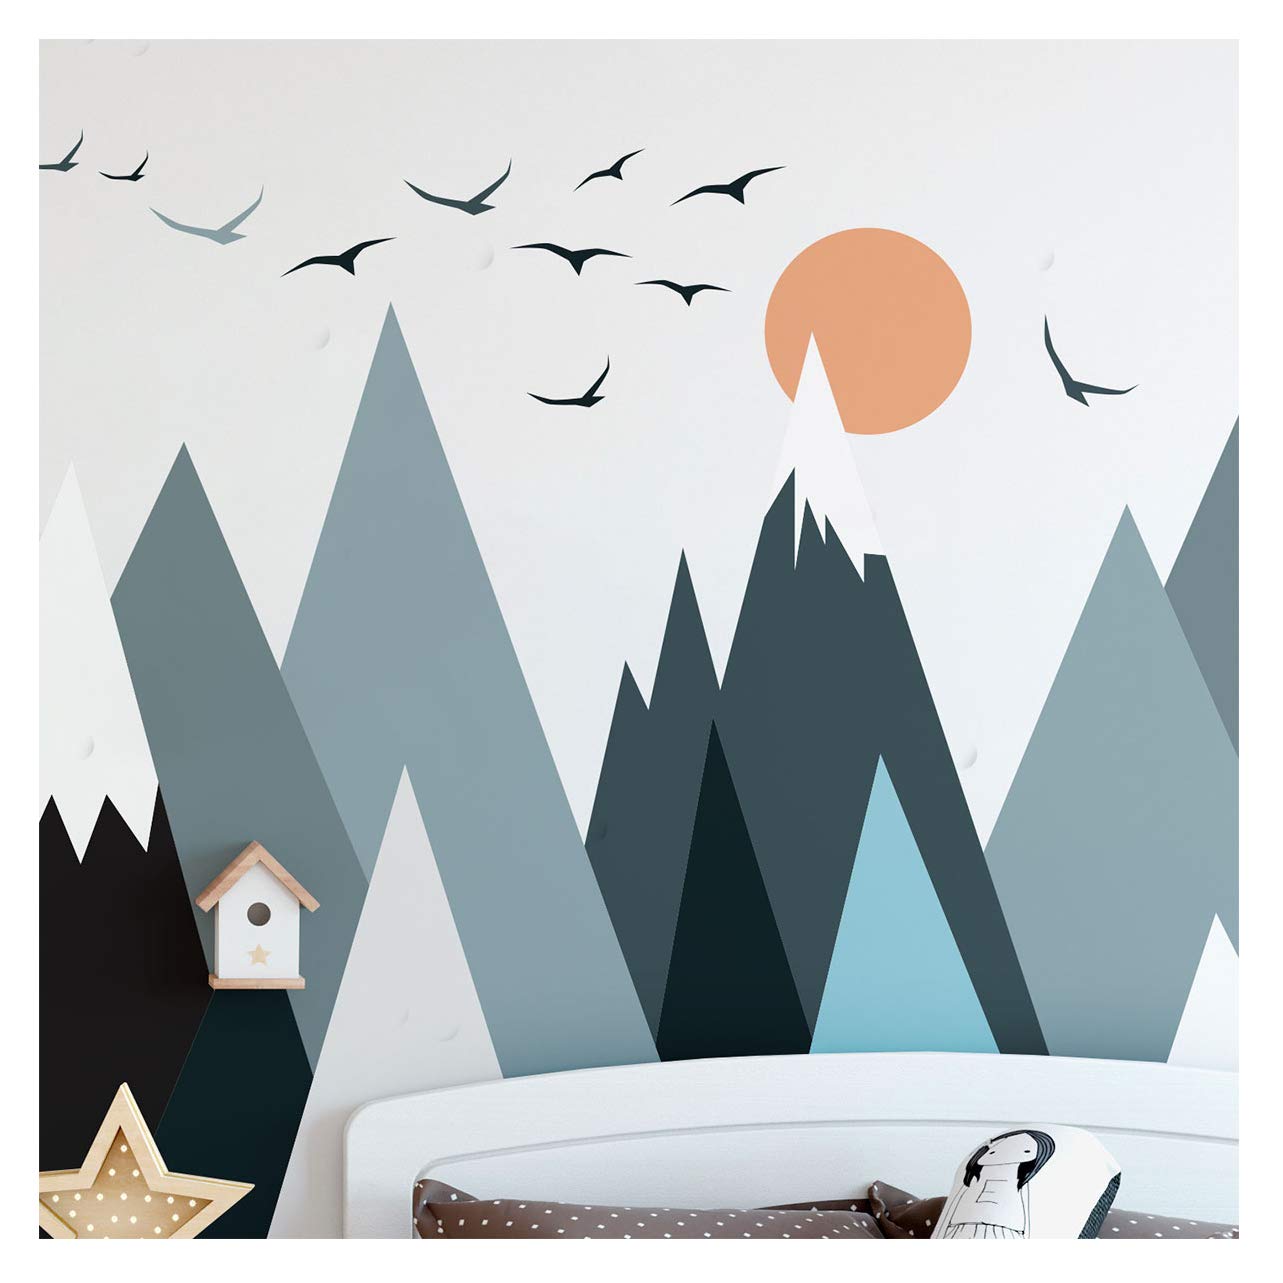 Ambiance-Aufkleber Skandinavische Parka Mountains Wandtattoos, DIY-Wohnkultur, abziehbare Aufkleber zum Abziehen und Aufkleben, wasserdichte und selbstklebende Wandkunst - 115 x 230 cm